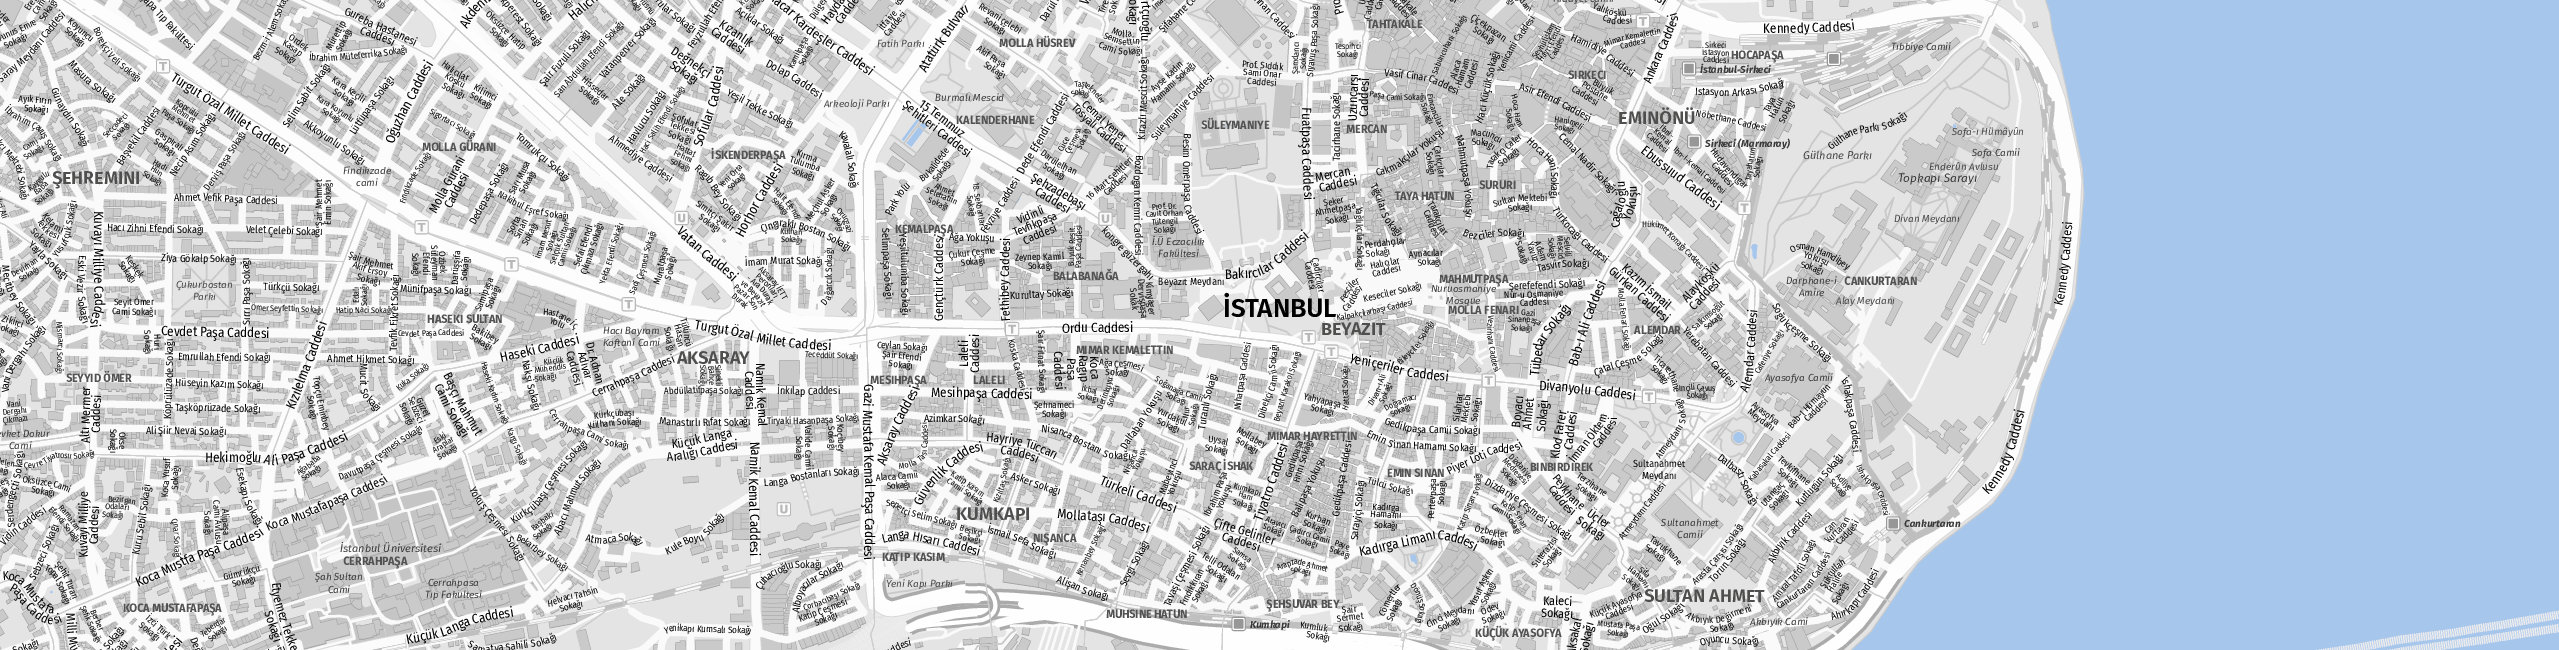 Stadtplan Istanbul zum Downloaden.